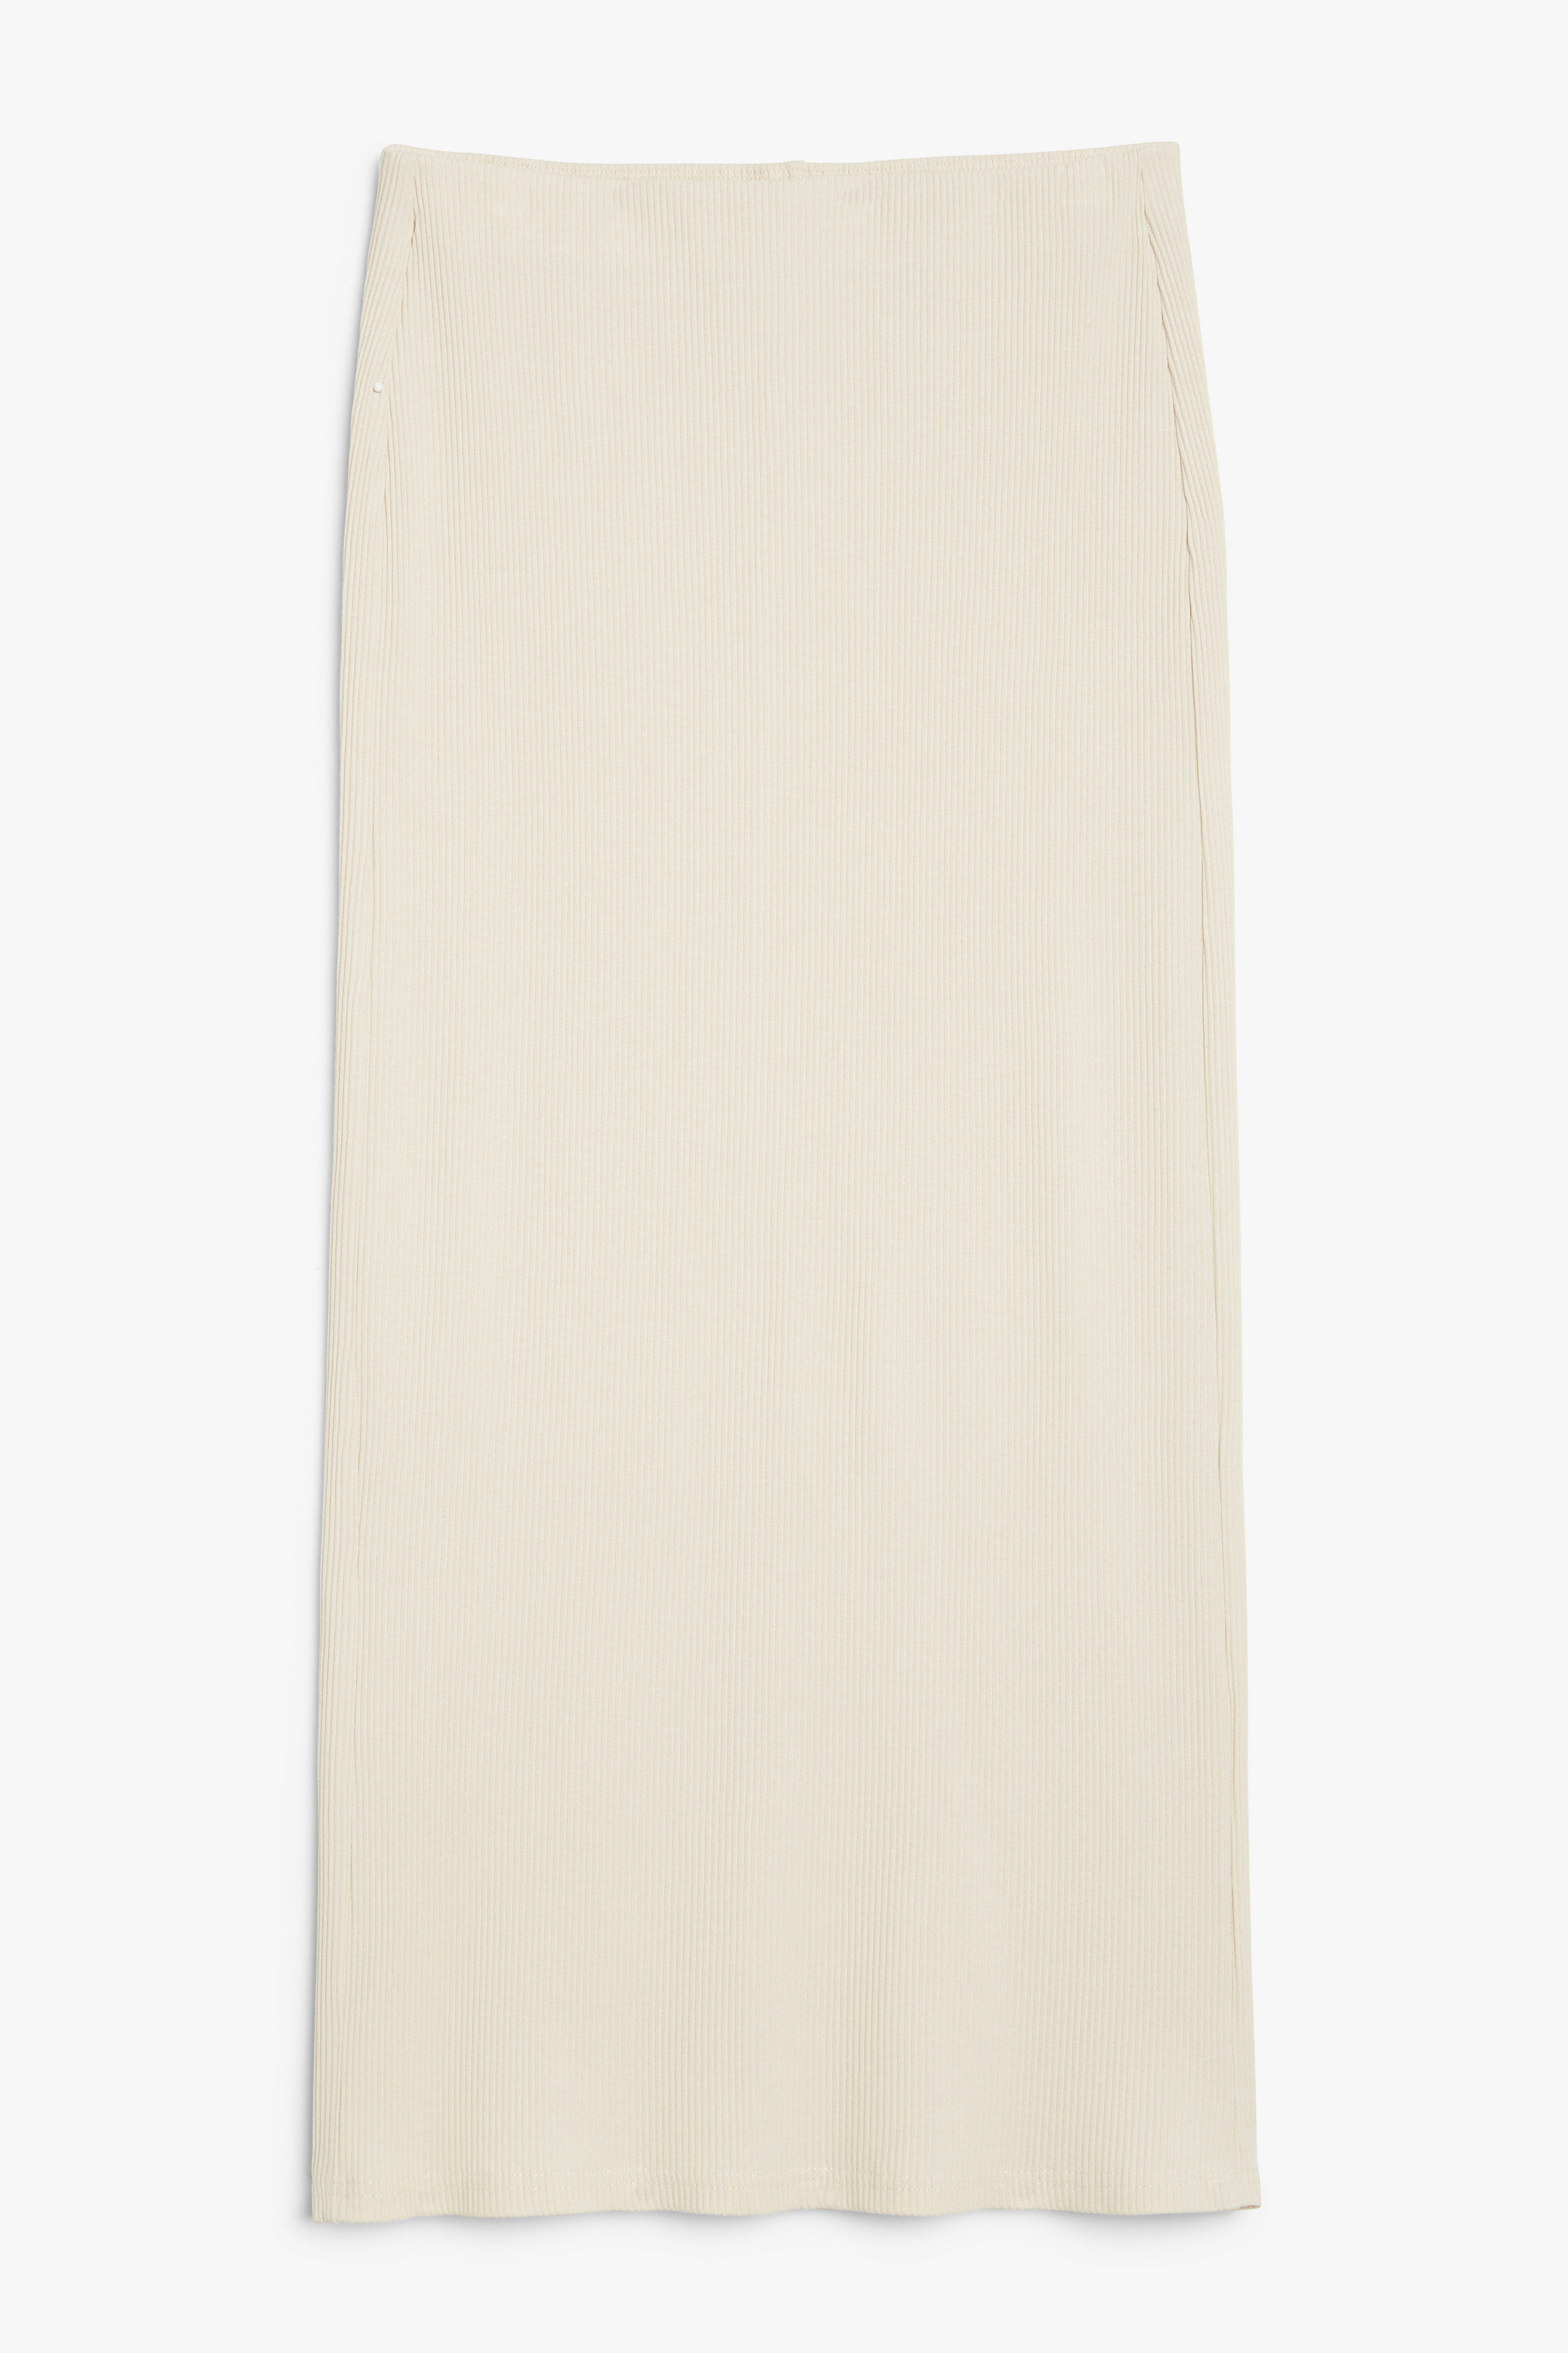 Billede af Monki Tætsiddende Maxi-pencil Skirt I Rib Råhvid, Nederdele. Farve: Off-white størrelse XL